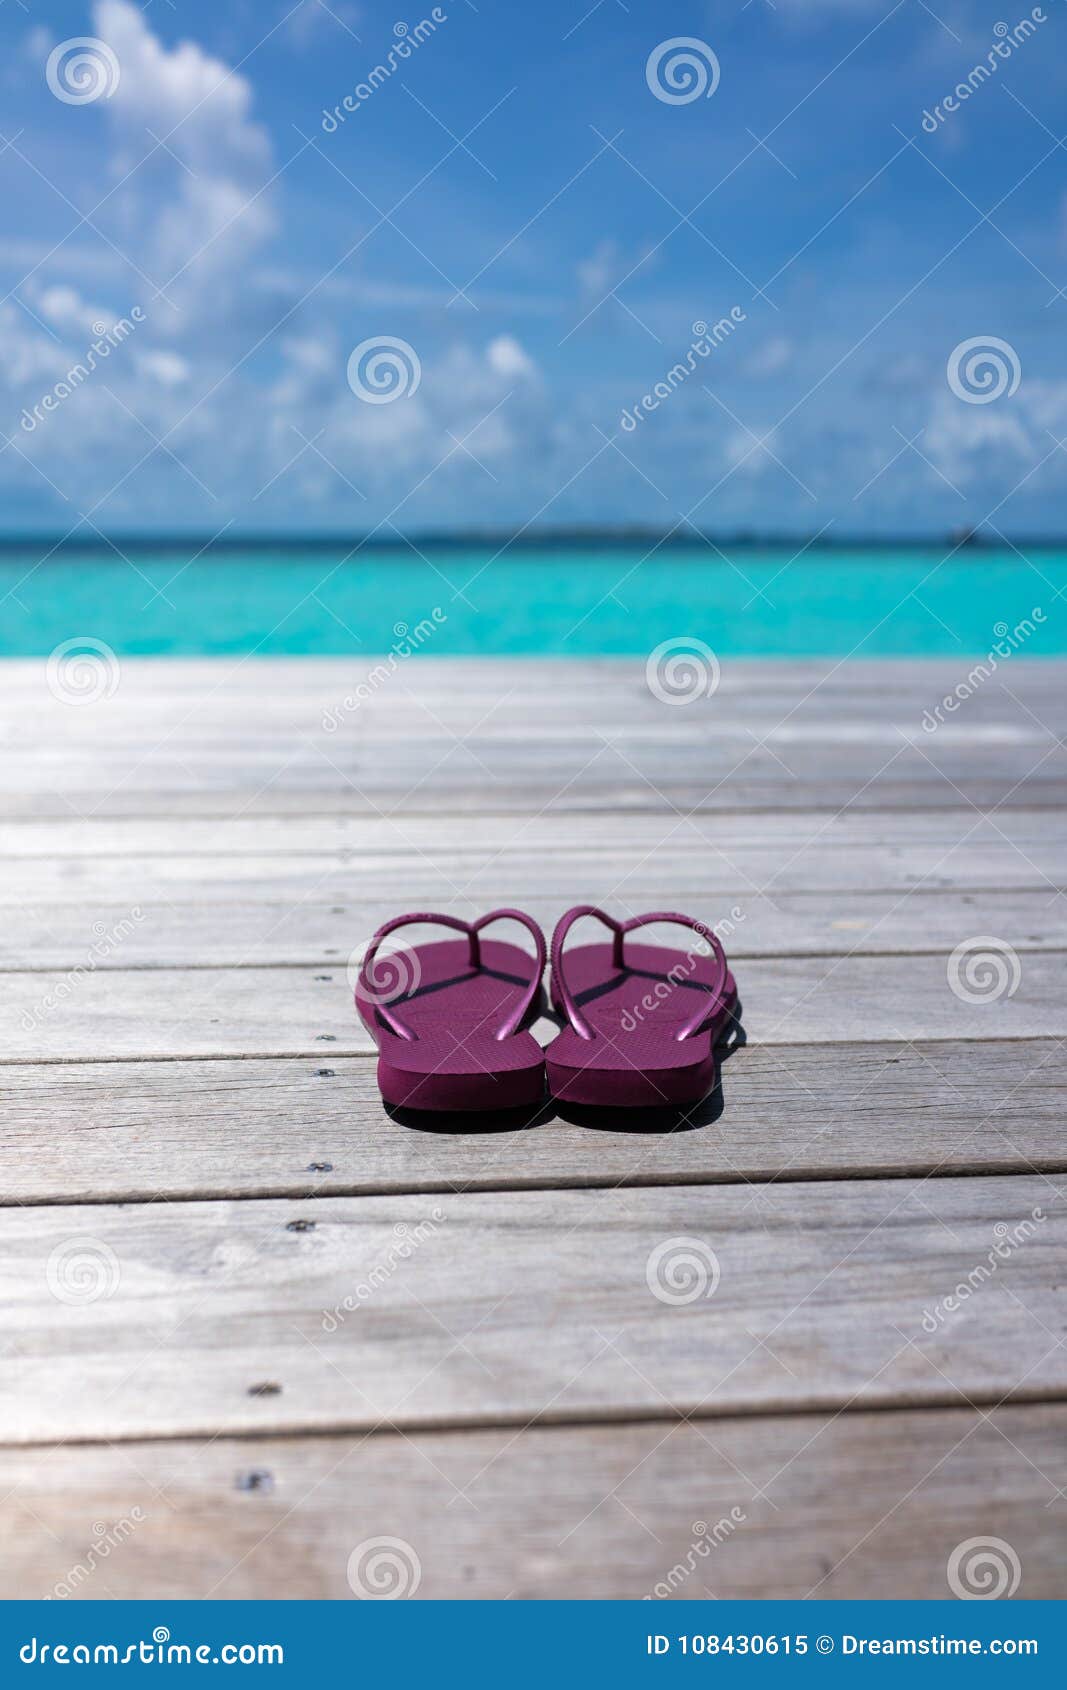 boardwalk slippers